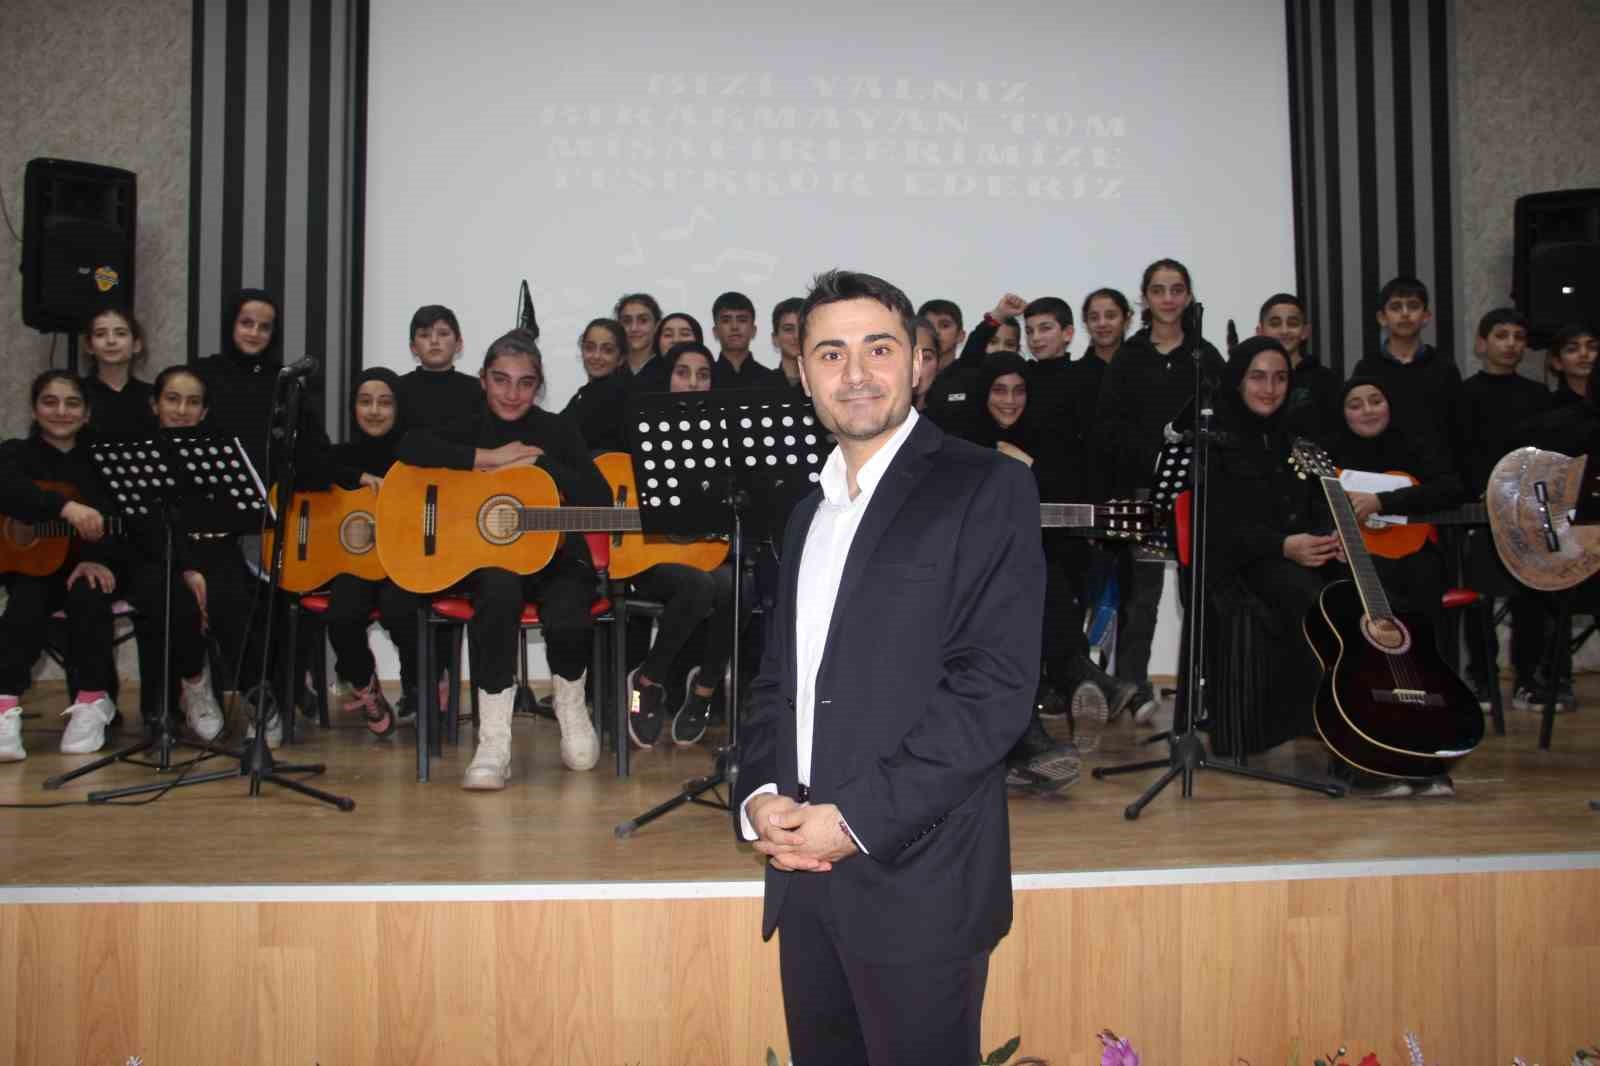 Köy okulu öğrencileri müzik grubu kurdu, konser verdi